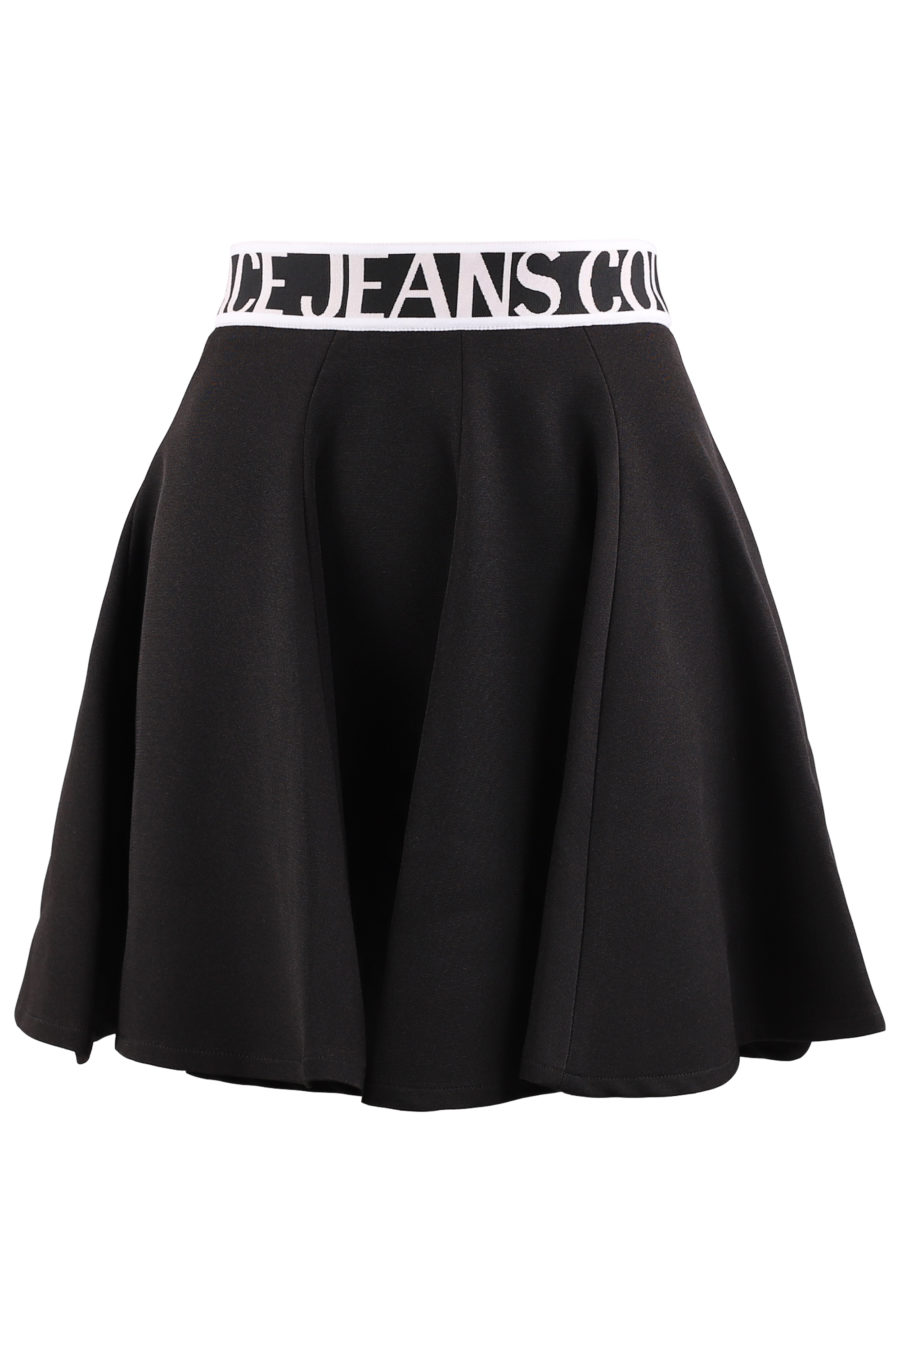 Black skirt with white logo - 1e713ffb5e71967dc4ba1499fbcfa873657df463